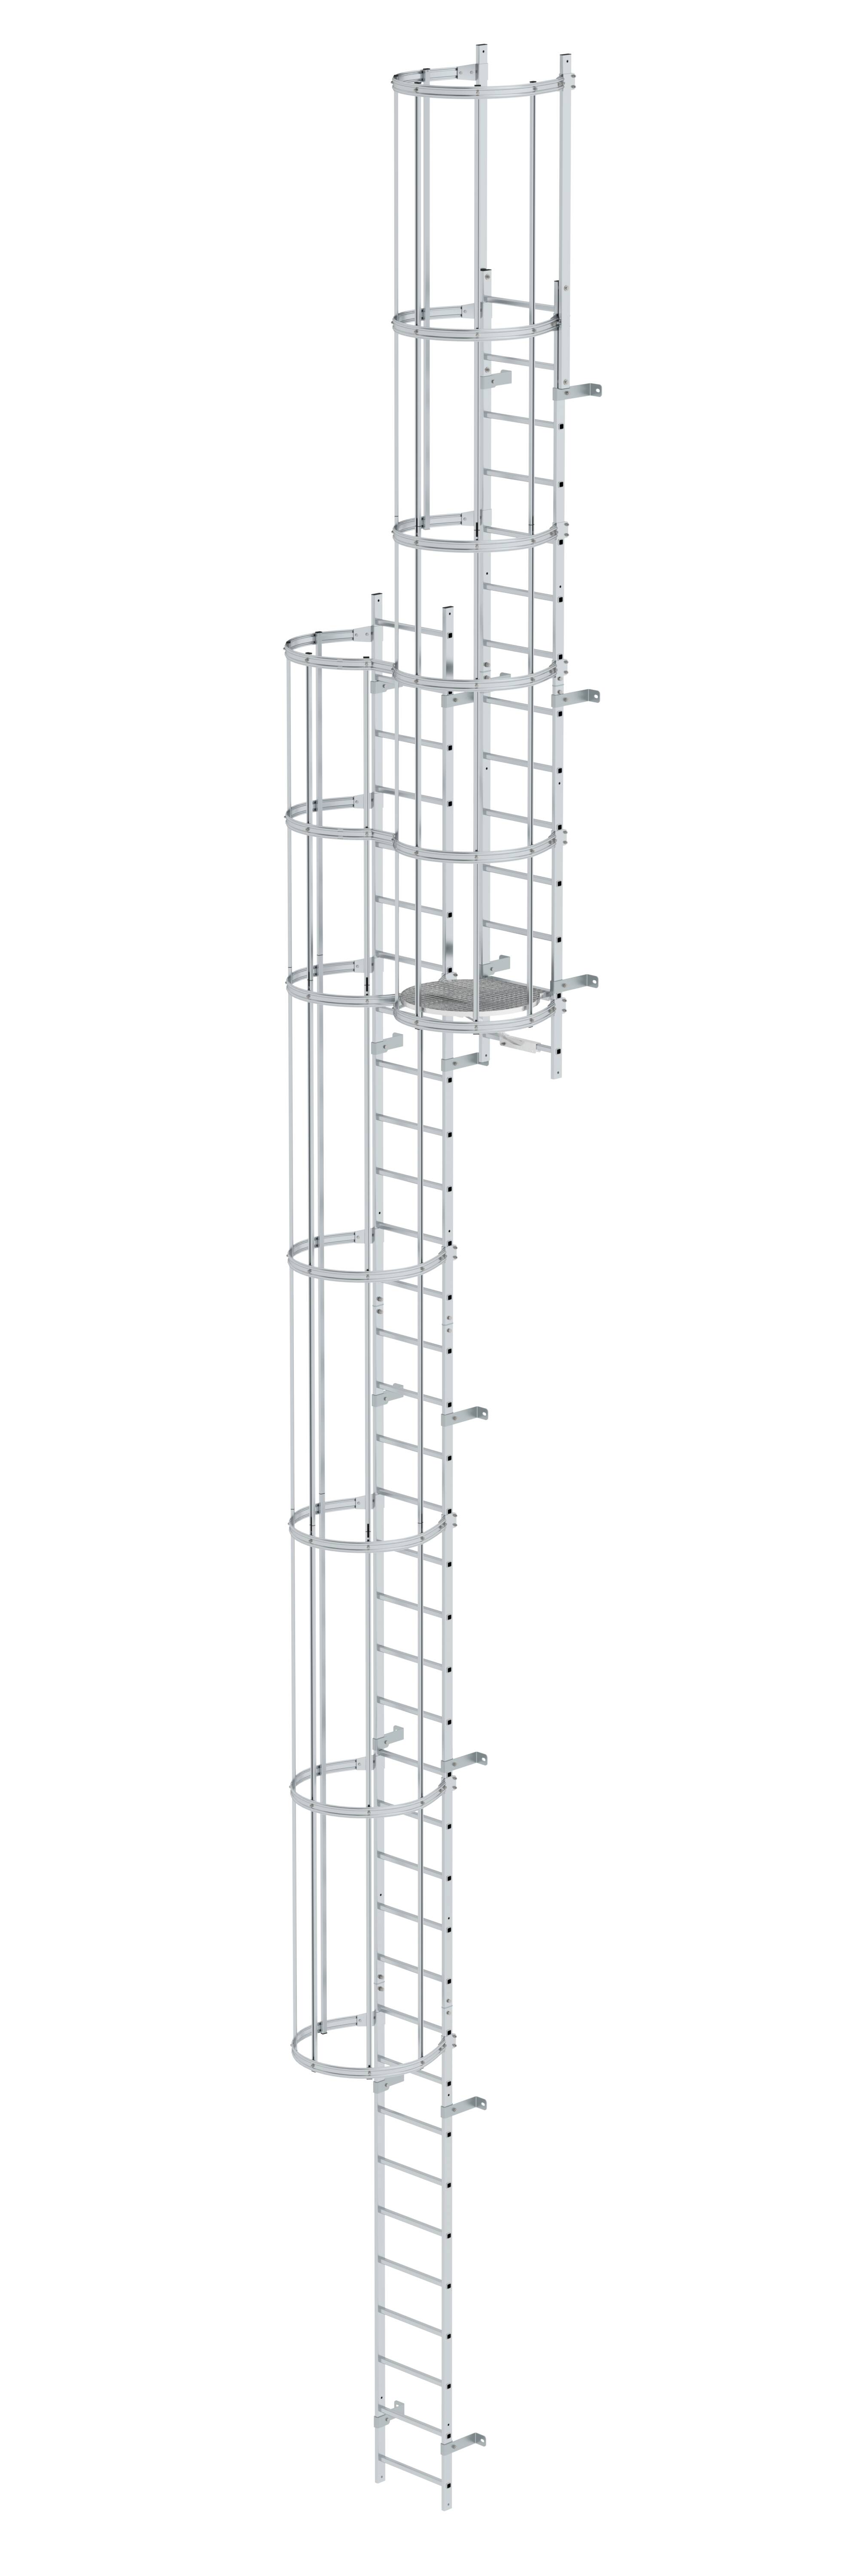 Mehrzügige Steigleiter mit Rückenschutz (Bau) Aluminium blank 12,96m